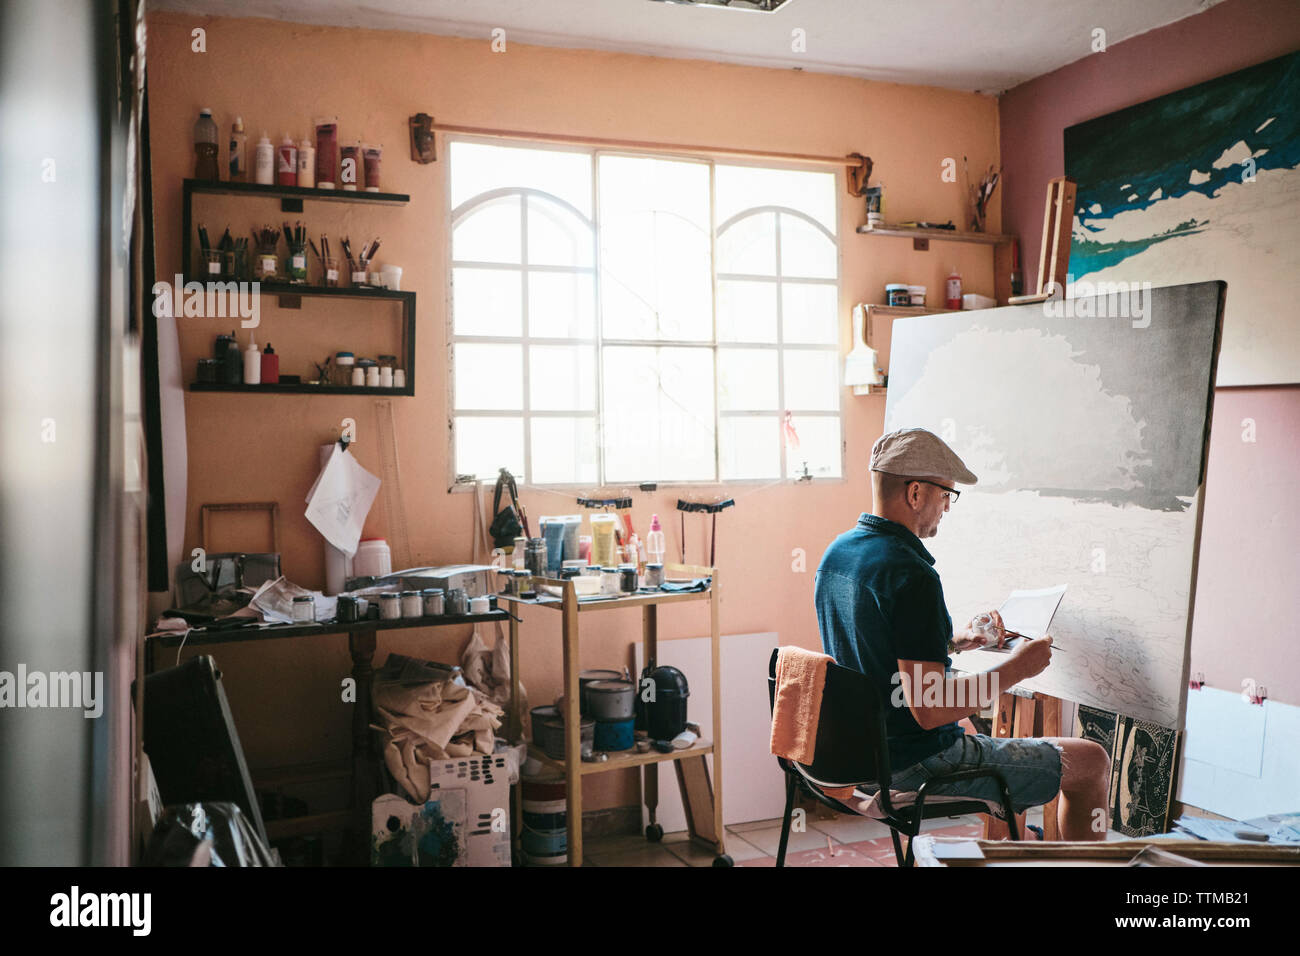 Mitte der erwachsene Mann arbeiten als Maler mit Pinsel und Leinwand in seinem Studio Stockfoto